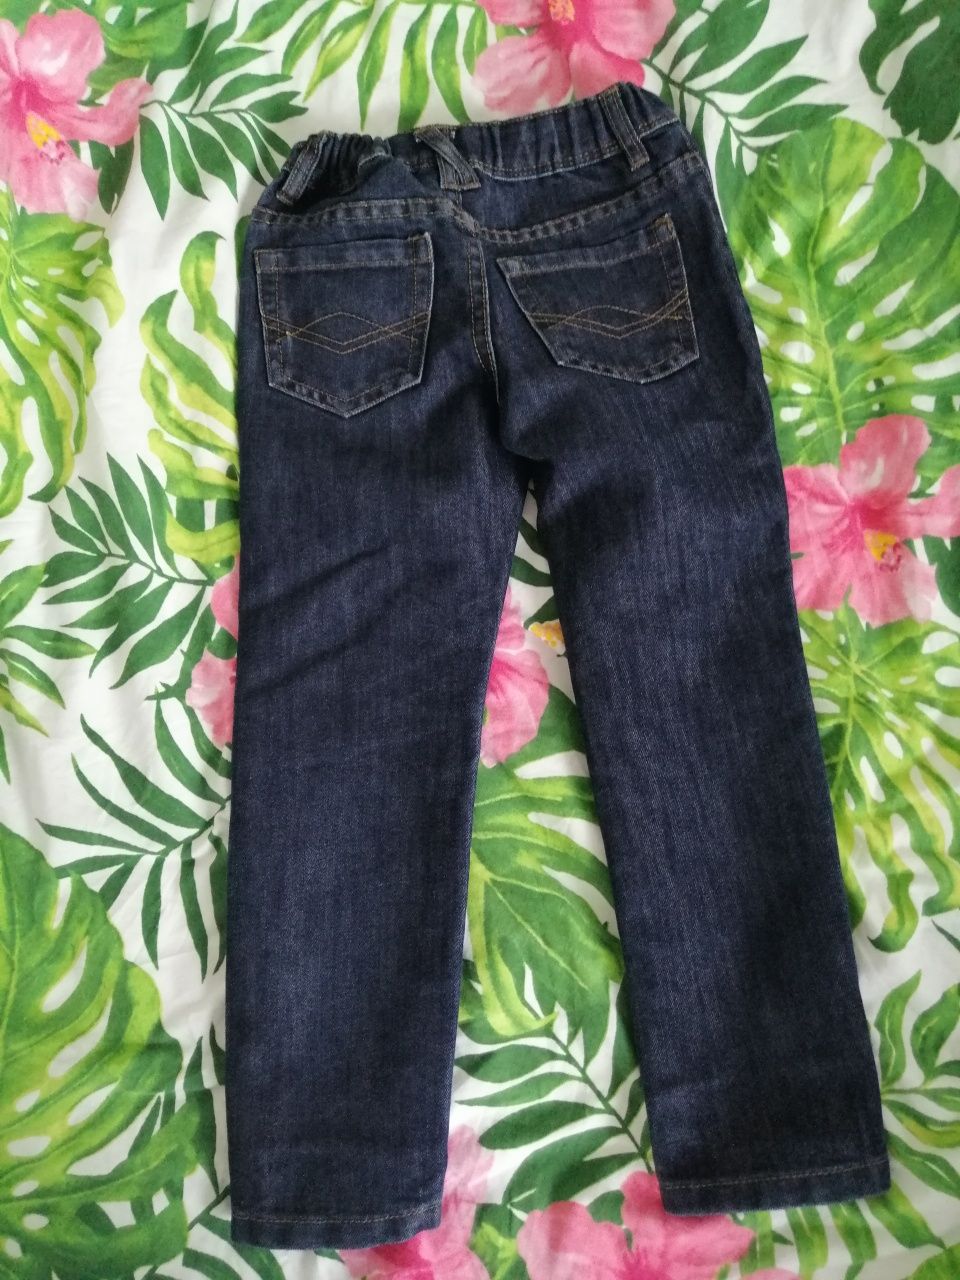 Spodnie jeansy chłopięce Urban 104-110cm